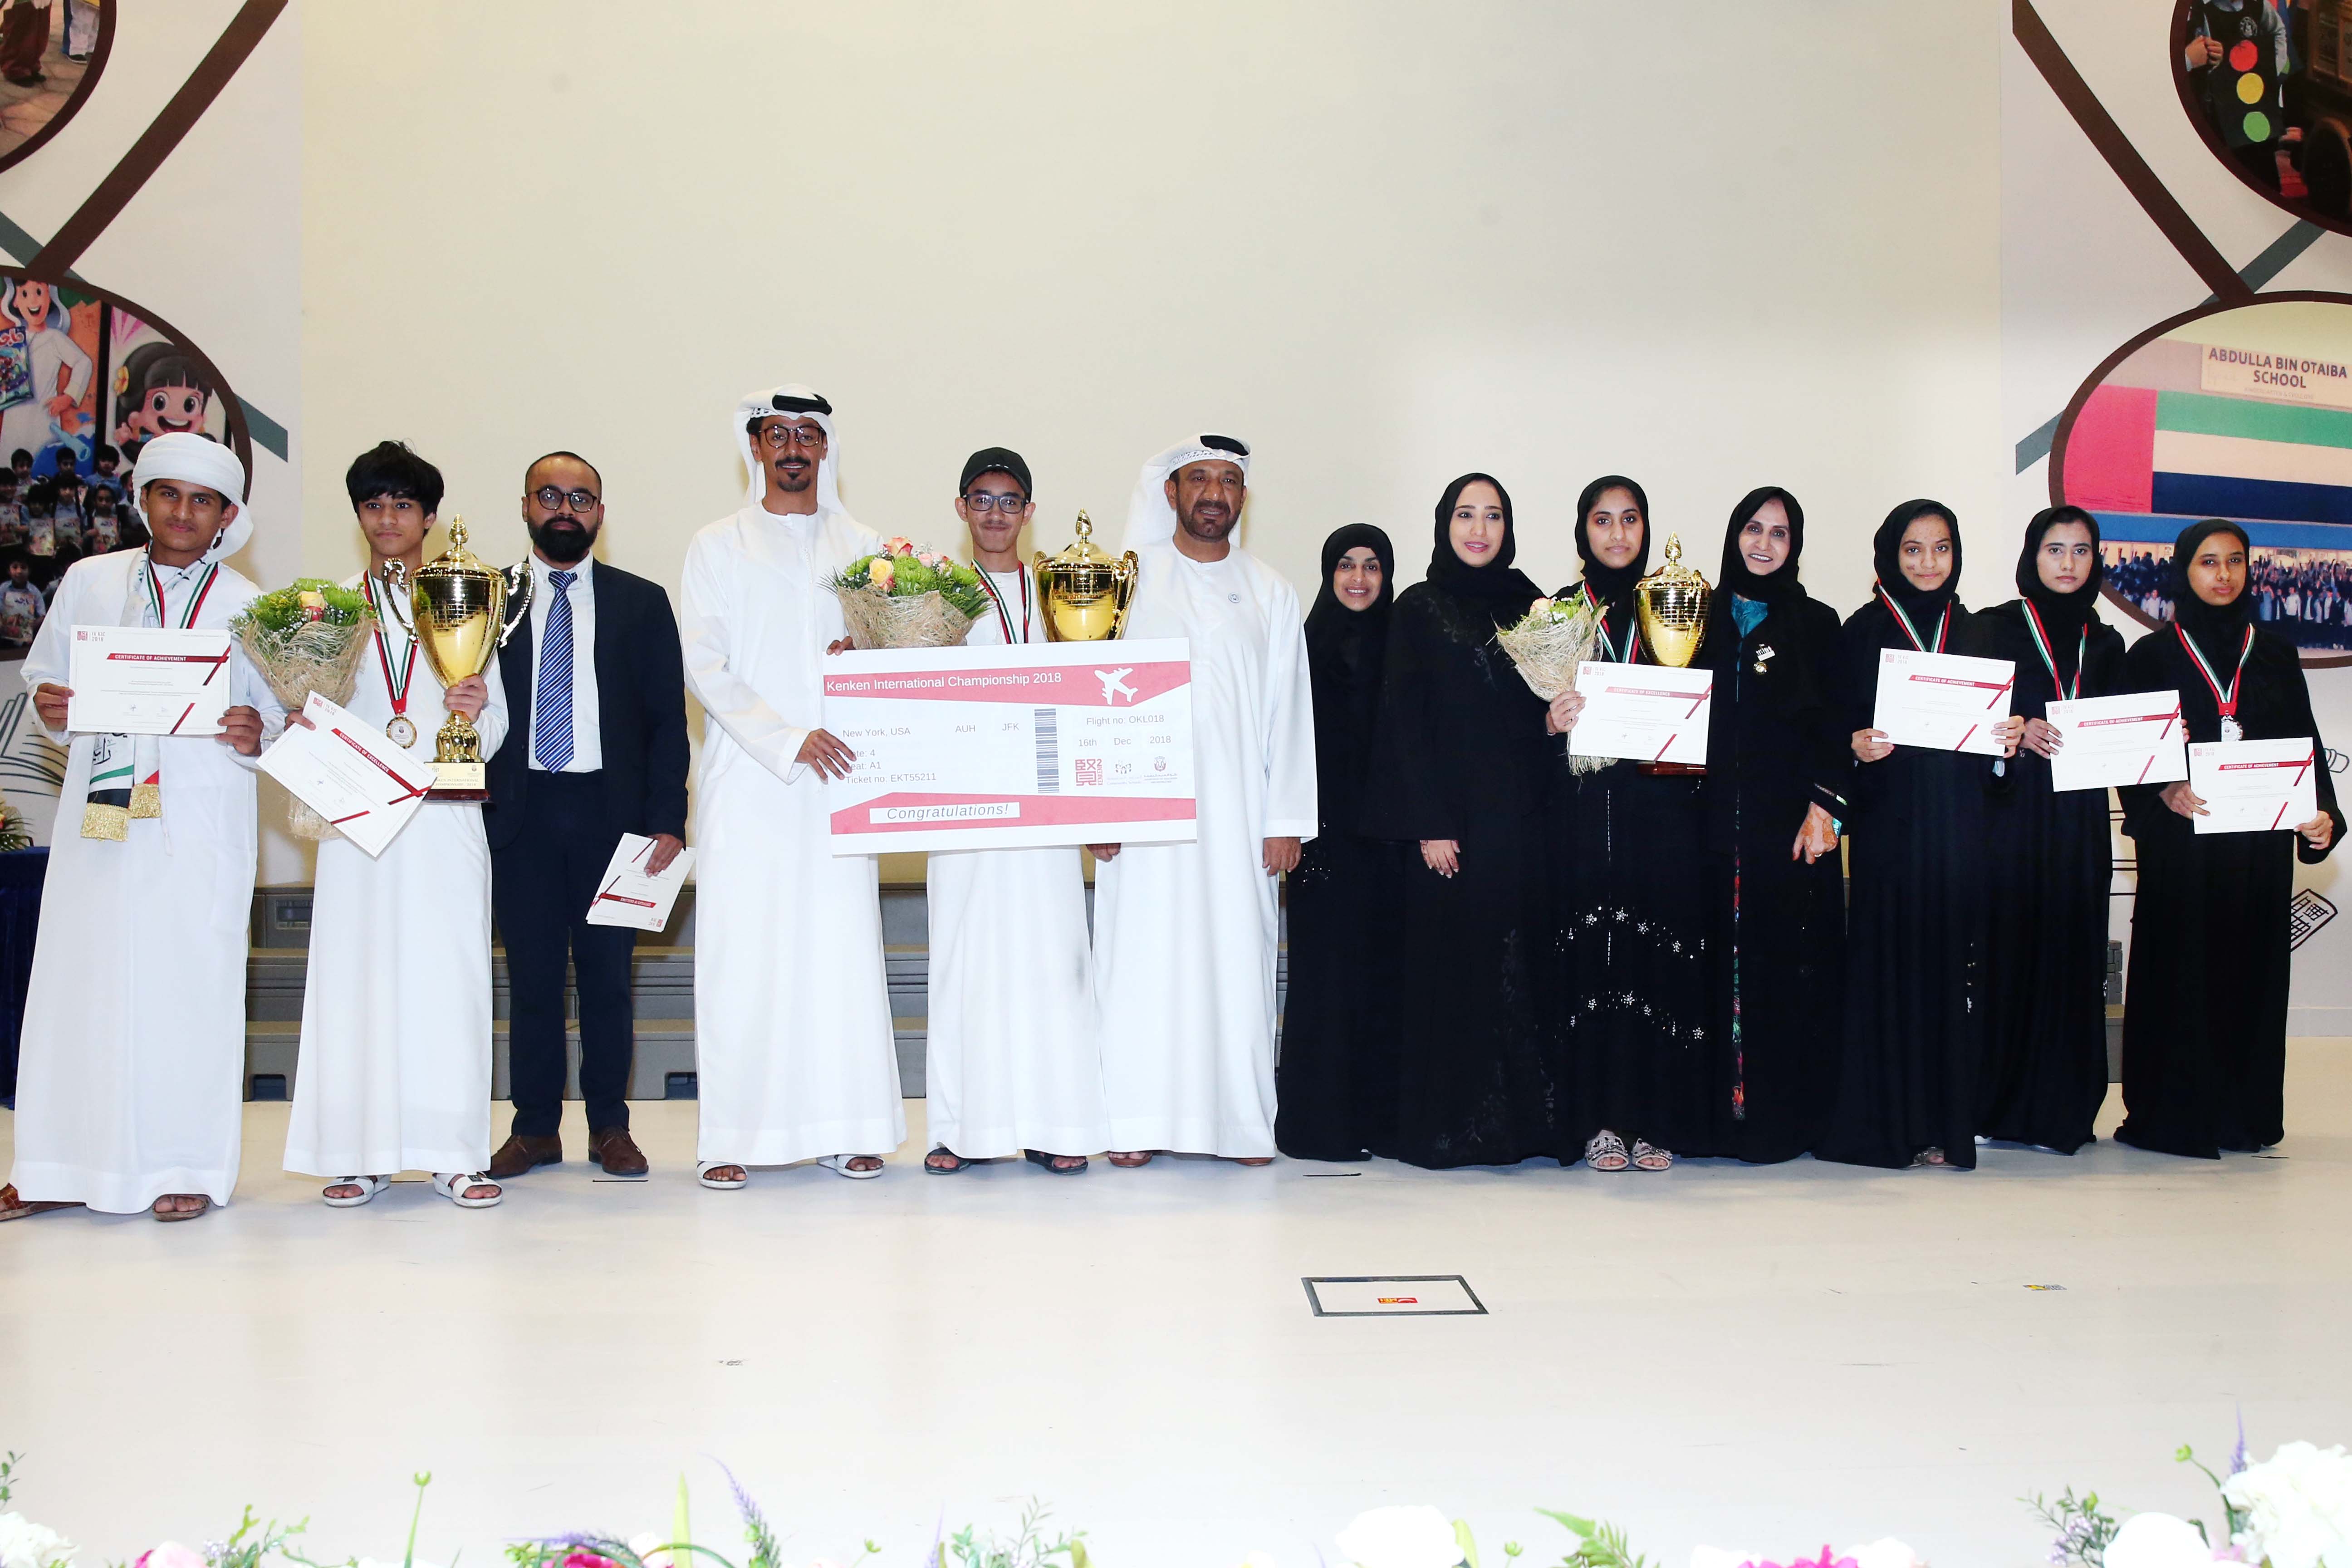 ‫دائرة التعليم والمعرفة أبوظبي تعلن عن أسماء المتأهلين في بطولة كنكن الدولية 2018‬